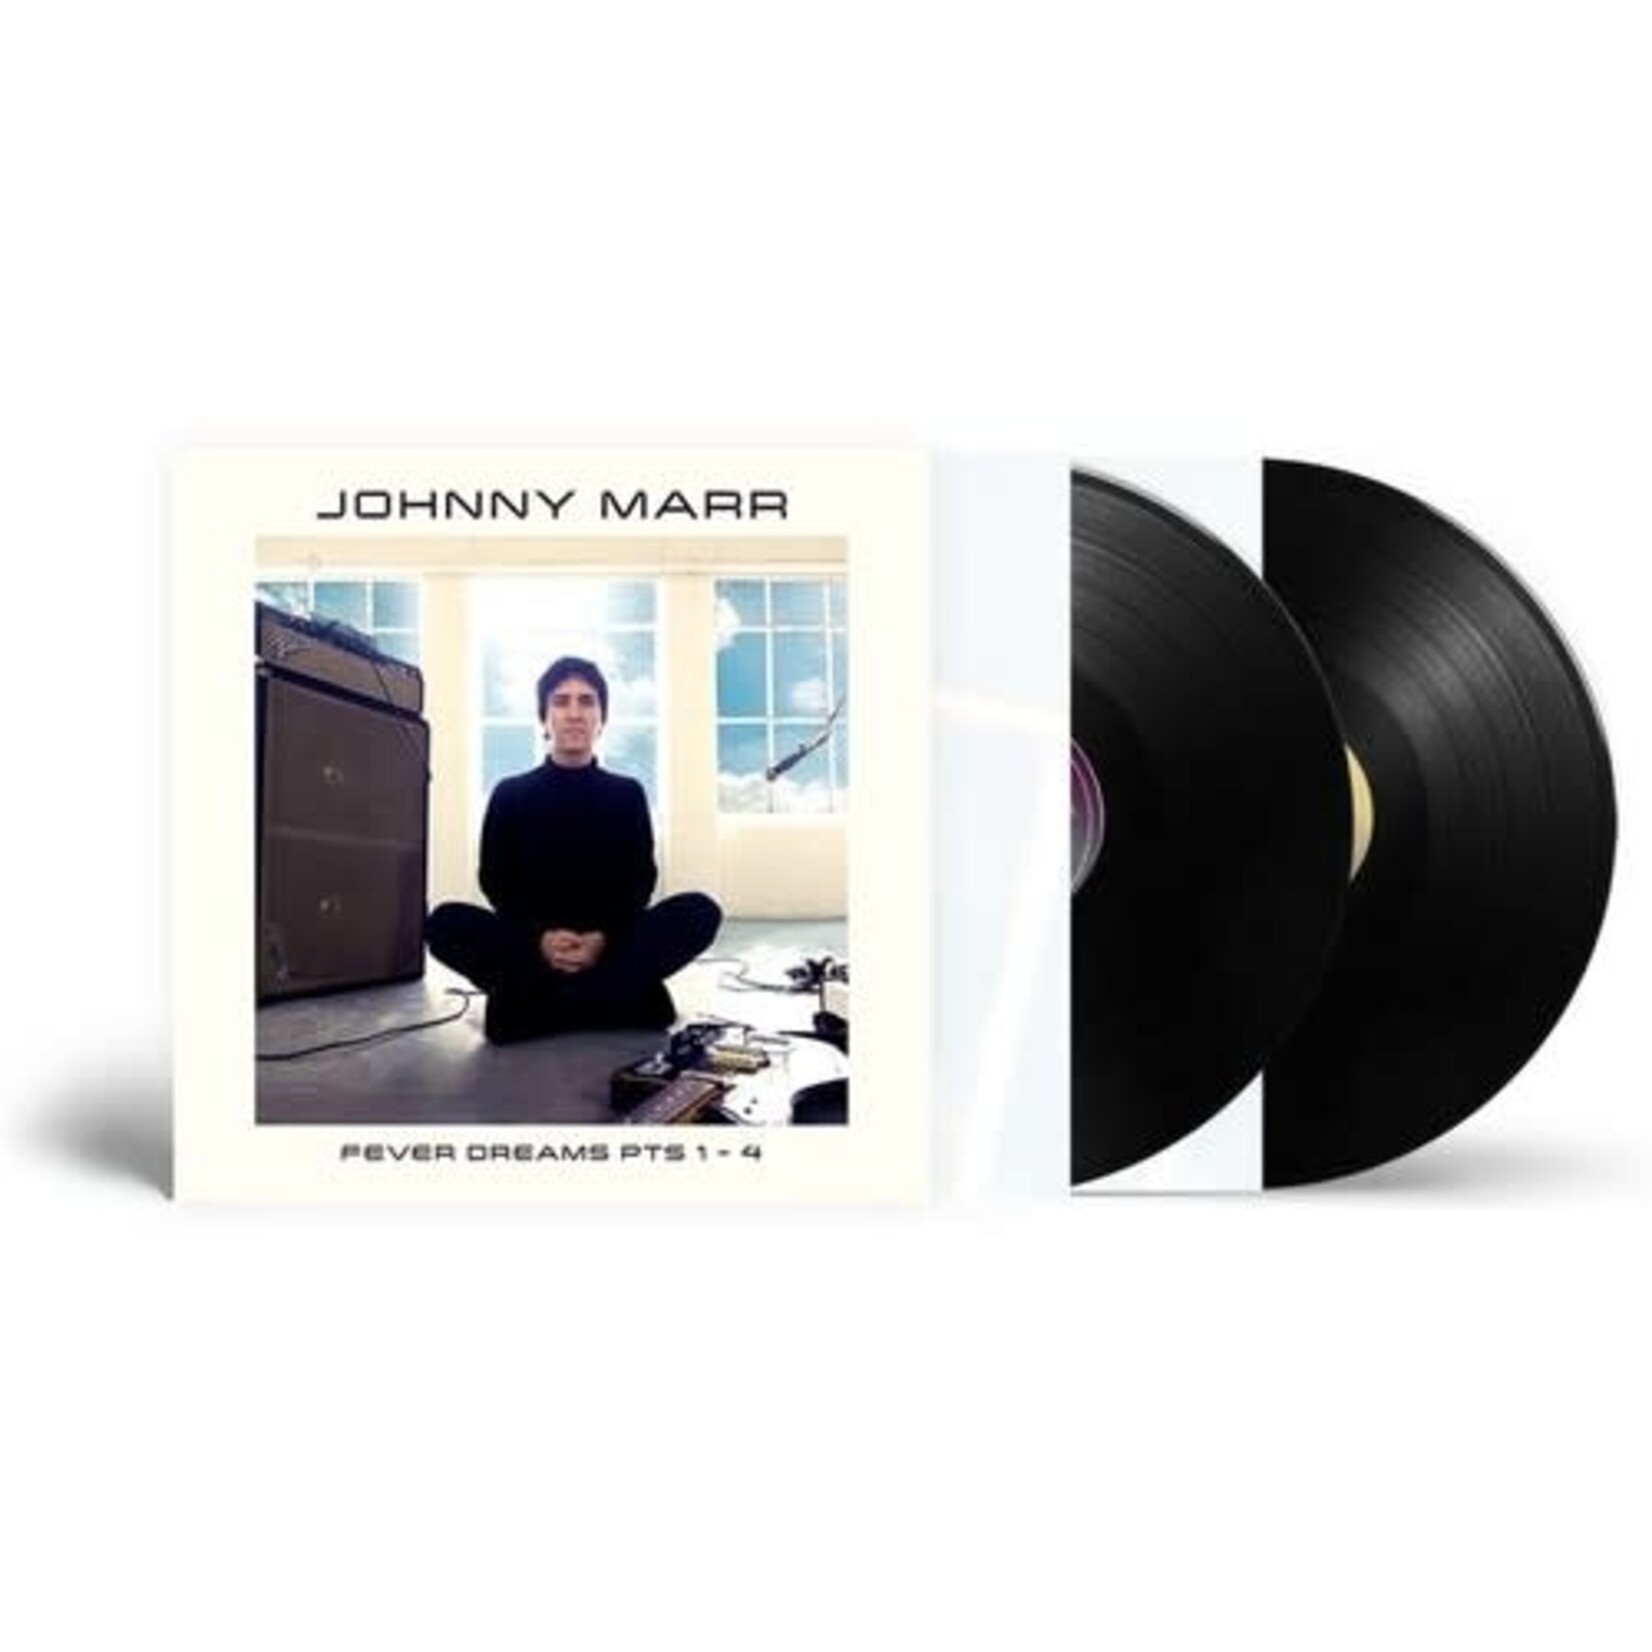 Johnny Marr - Fever Dreams PTS 1-4 - Vinyl LP (NEW)